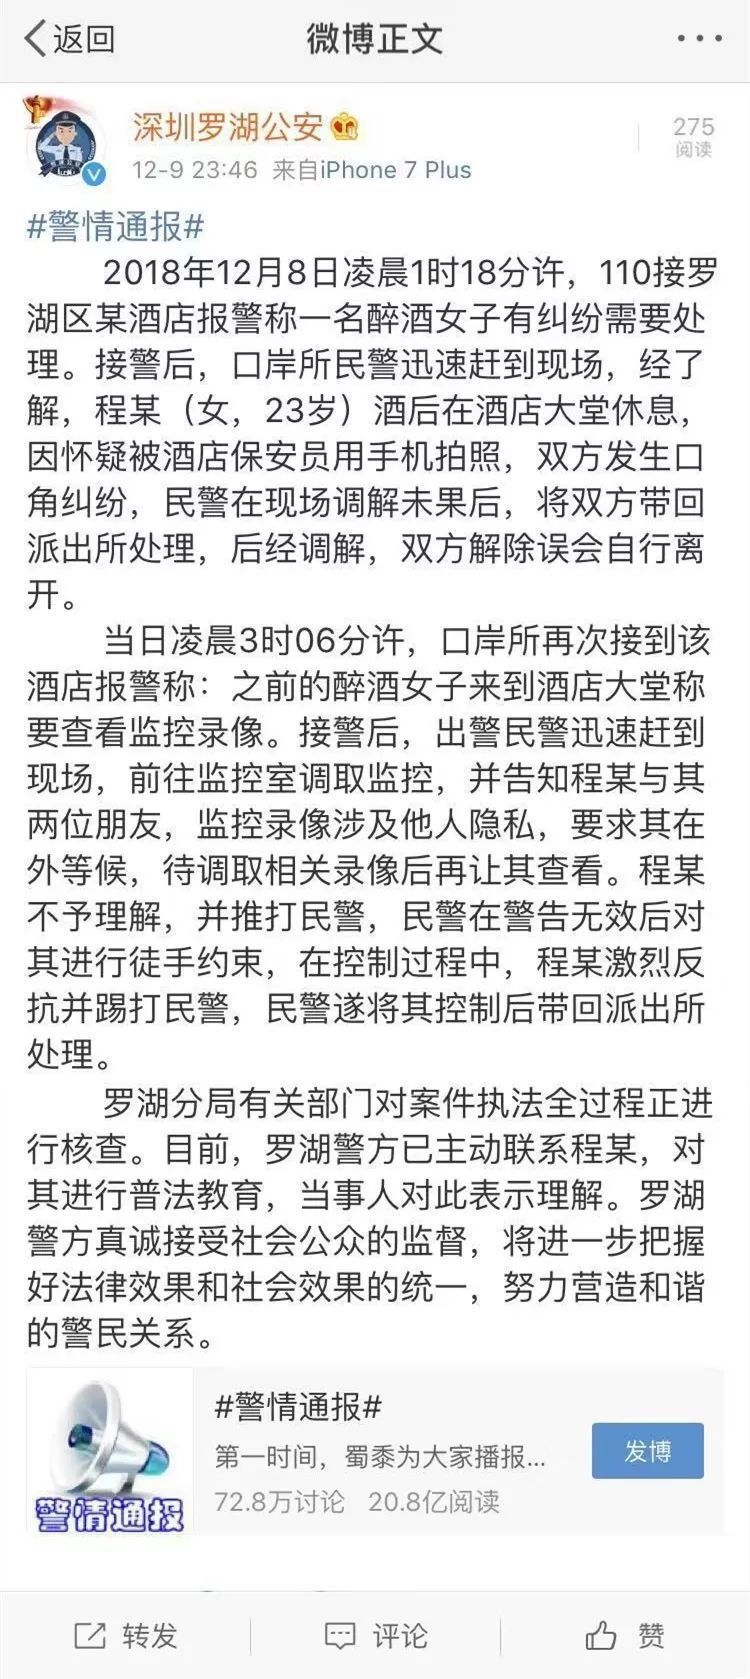 警棍驱赶、膝盖锁喉？深圳女子微博哭诉遭民警暴力执法，警方深夜回应